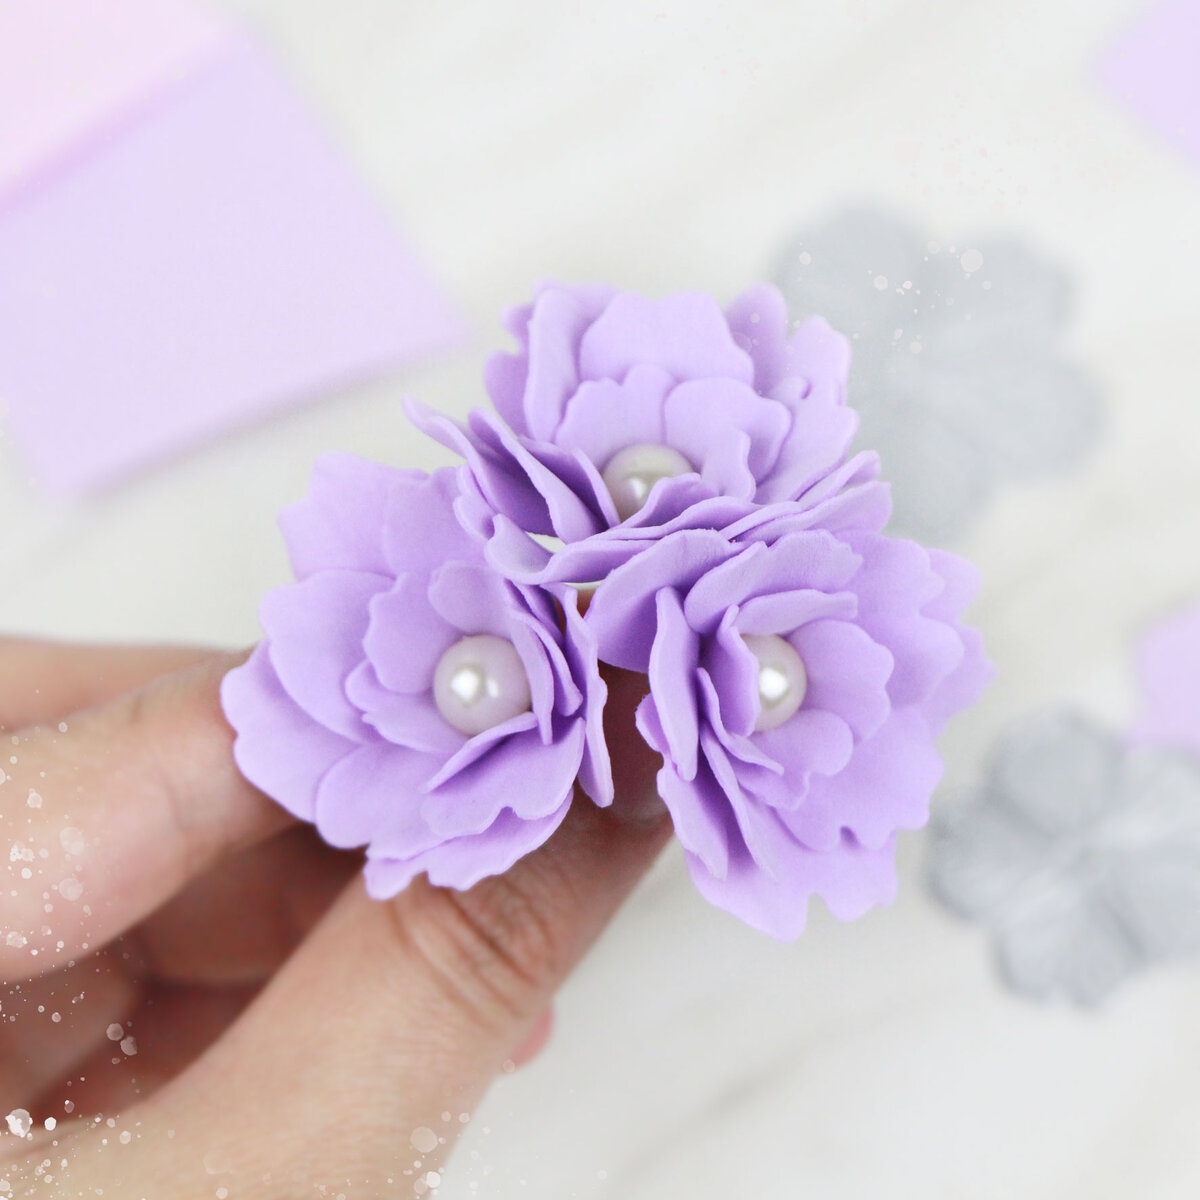 Мелкие цветочки из фоамирана DIY МК / Foamiran Flower Making / Реалистичные цветы из фоамирана